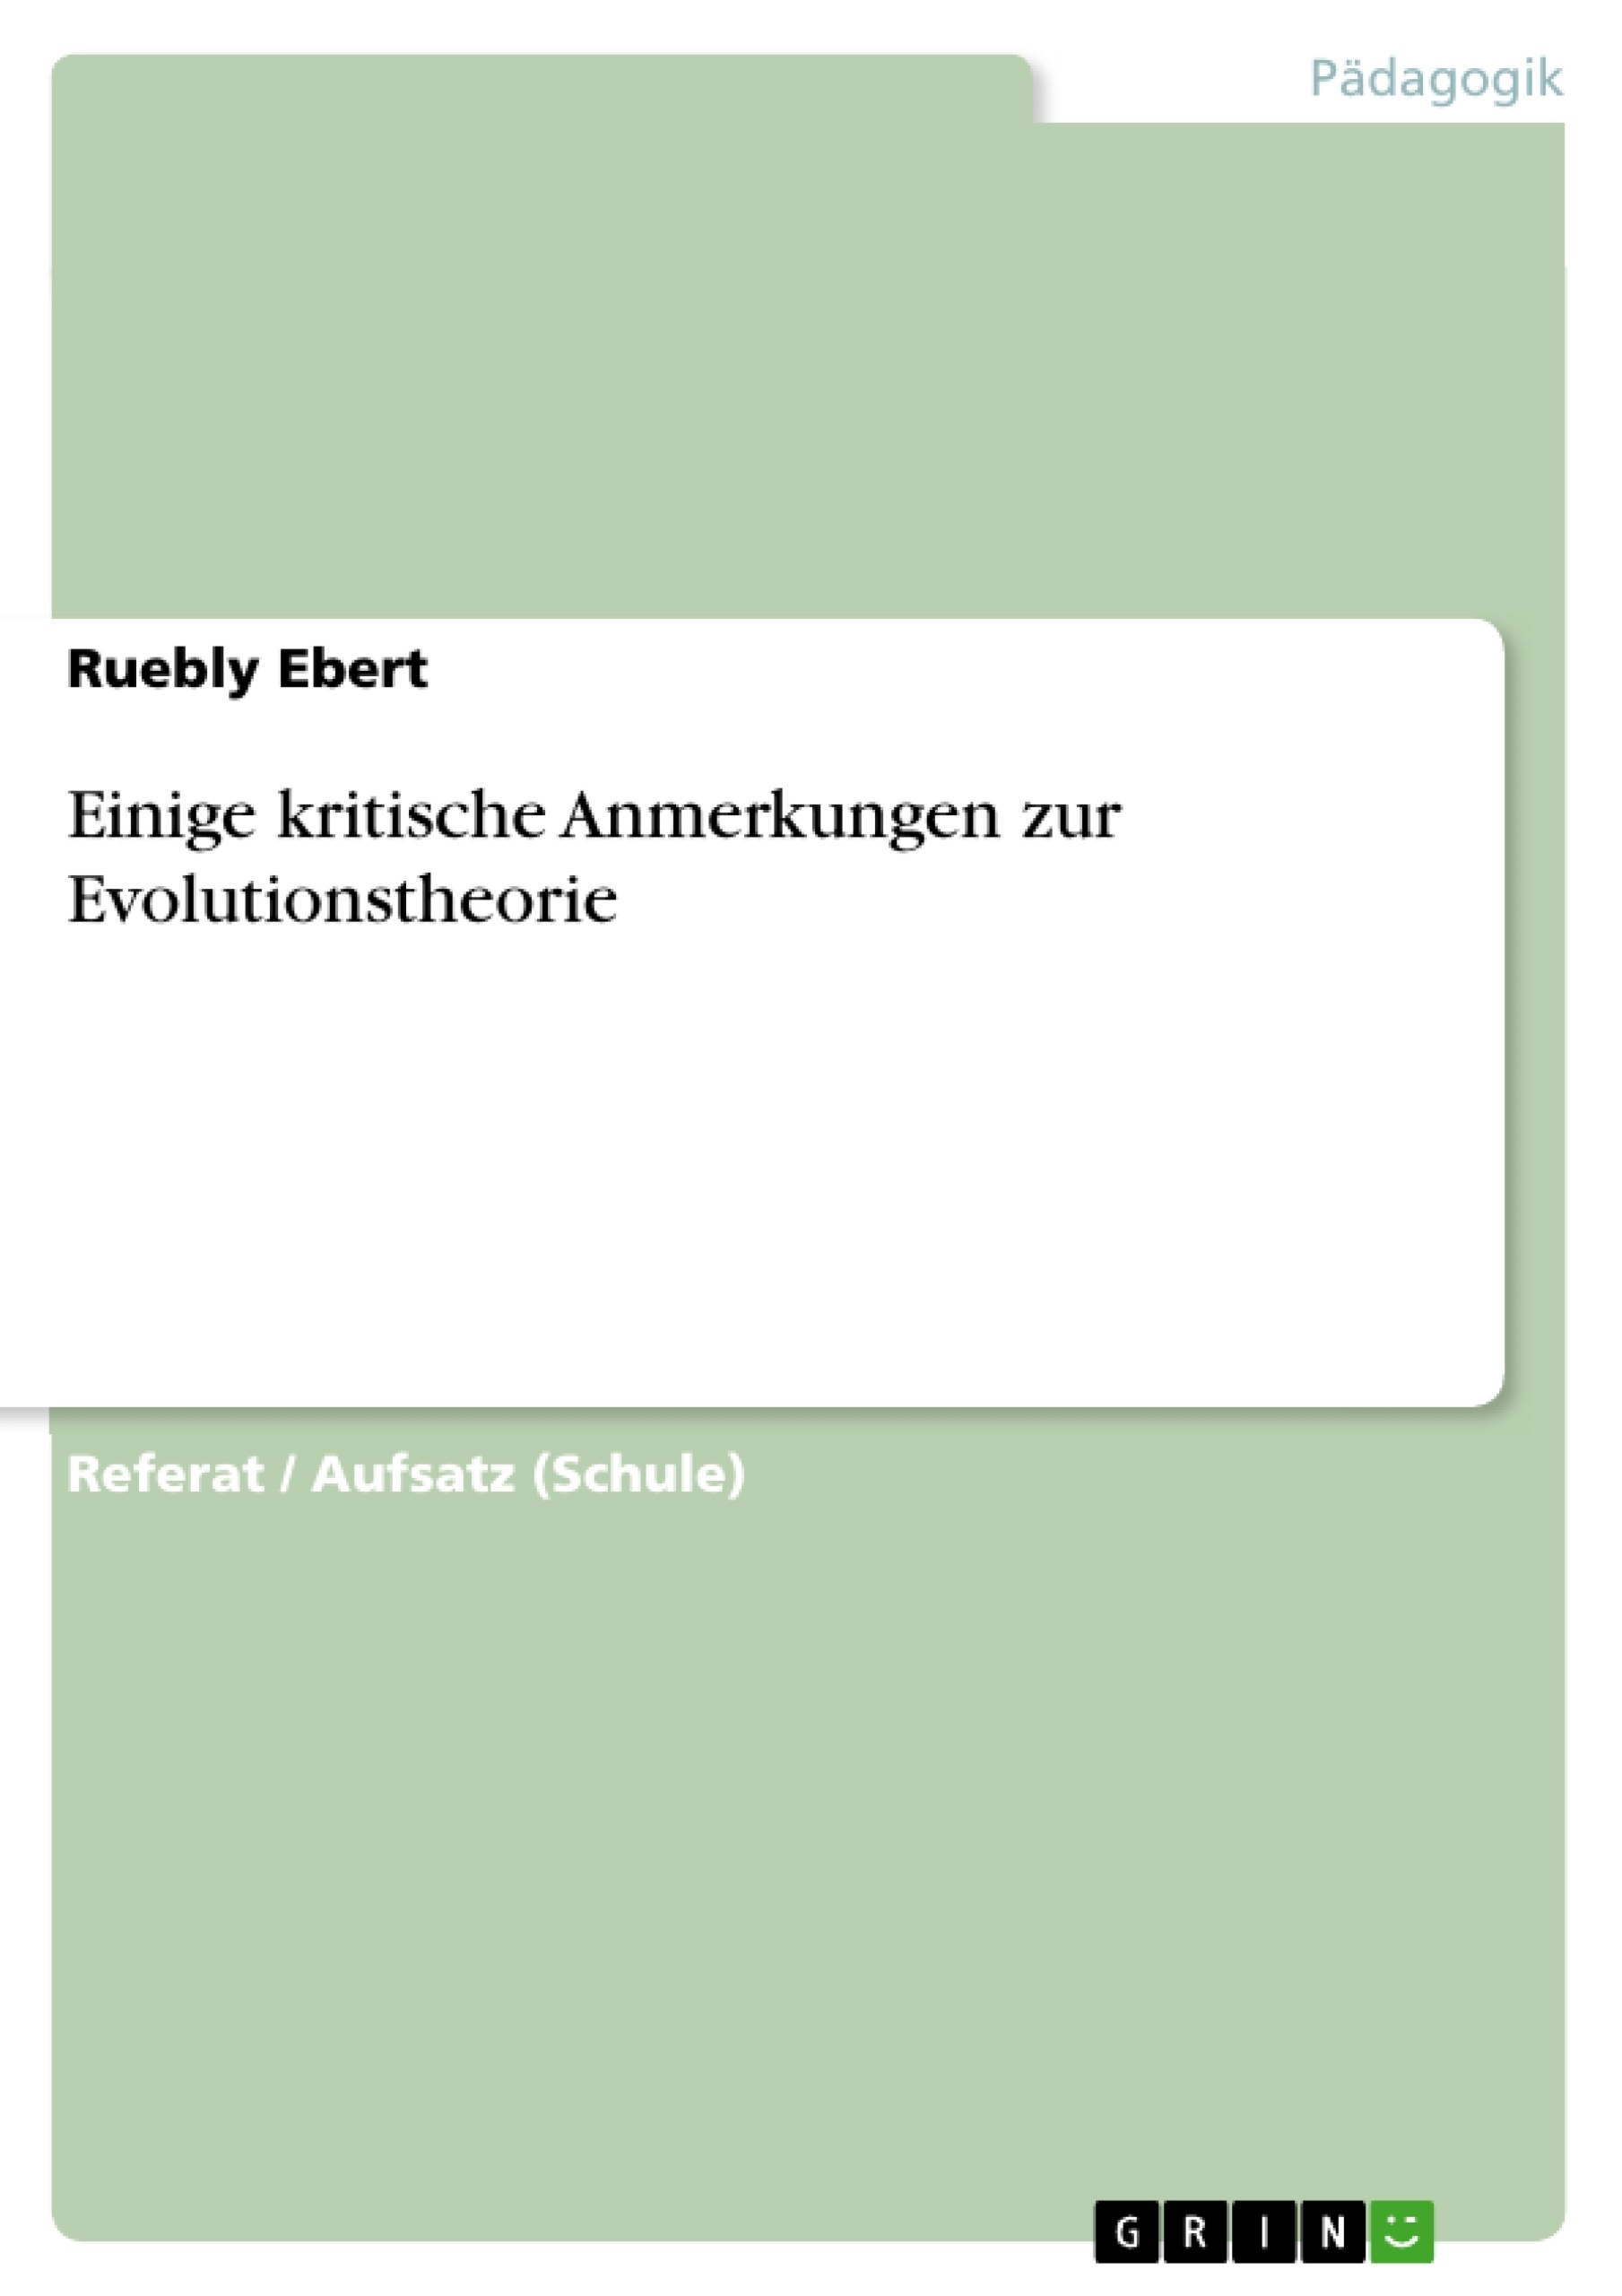 Title: Einige kritische Anmerkungen zur Evolutionstheorie